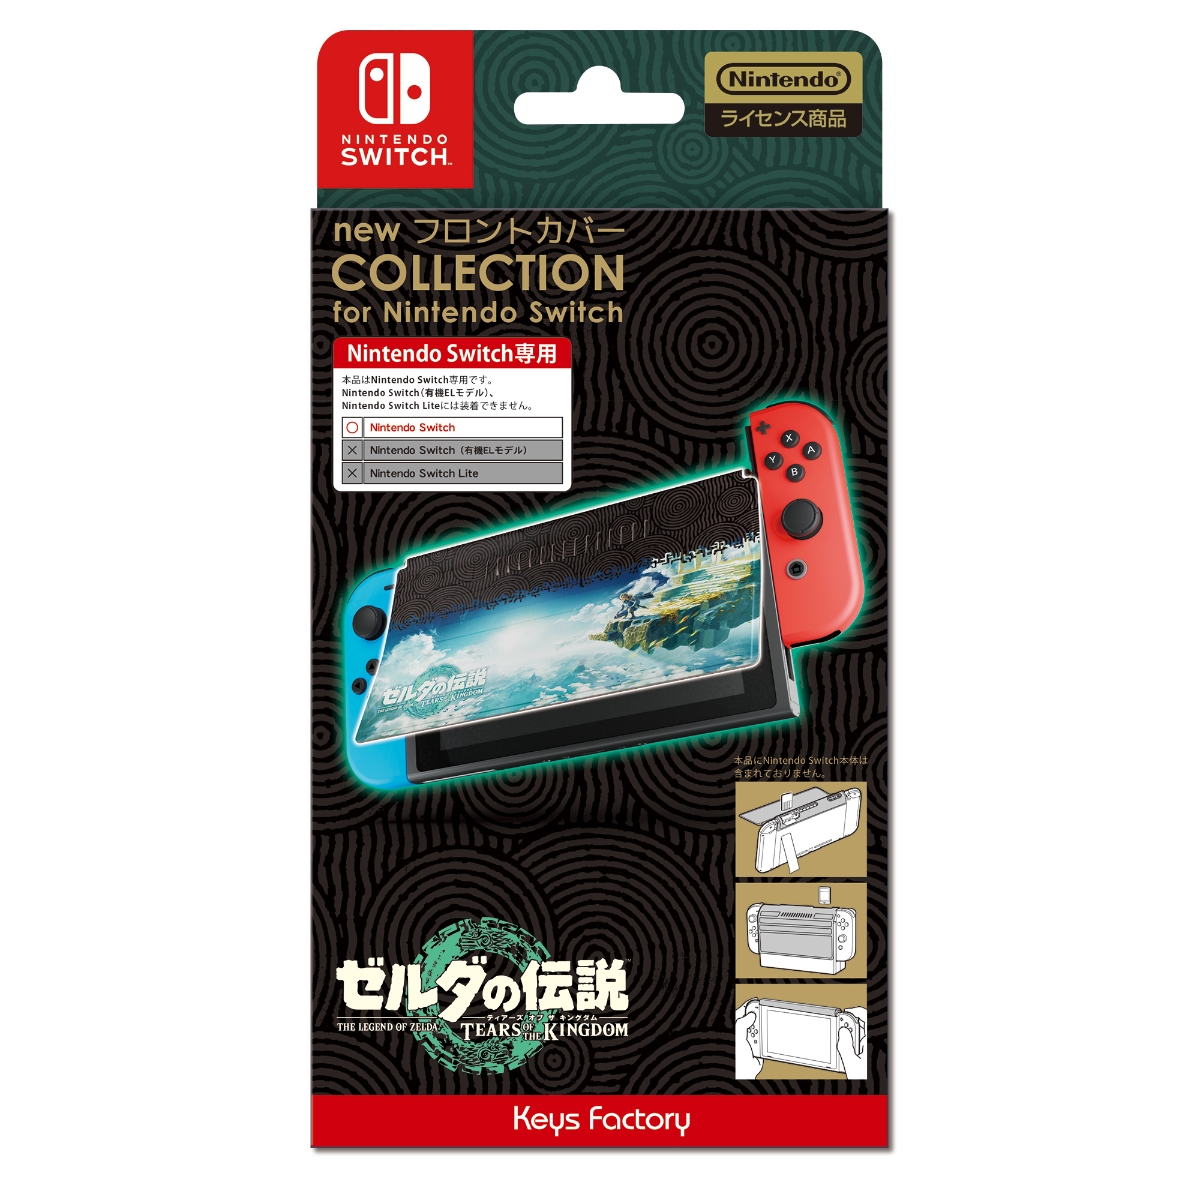 new フロントカバー COLLECTION for Nintendo Switch (ゼルダの伝説 ティアーズ オブ ザ キングダム)画像